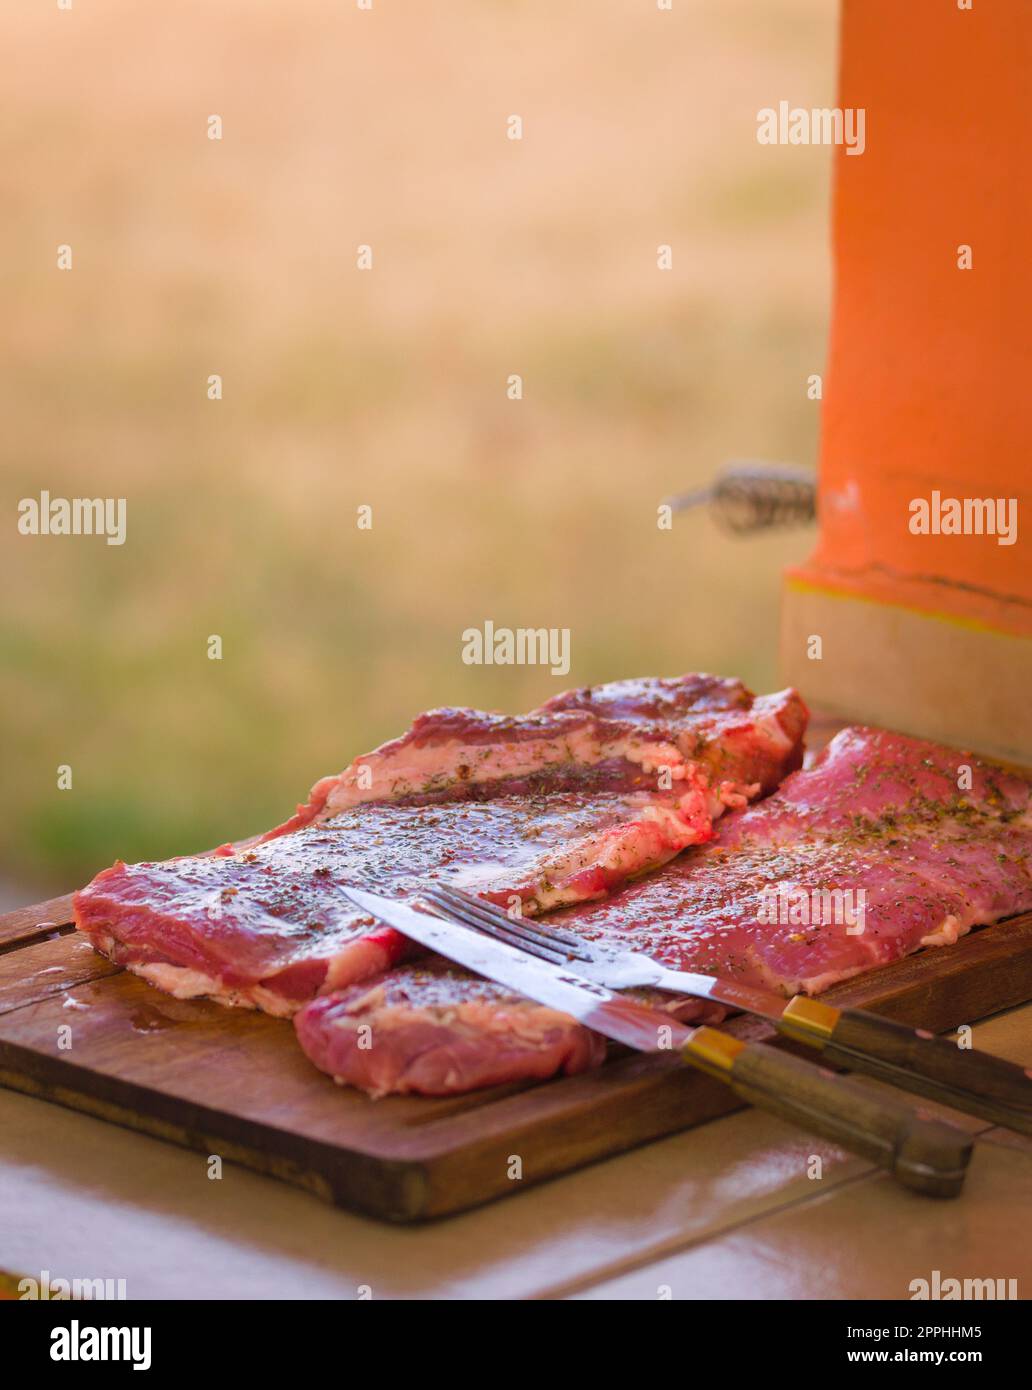 Gran trozo de carne roja cruda lista para asar a la parrilla. Comida típica argentina, asado. Foto de stock